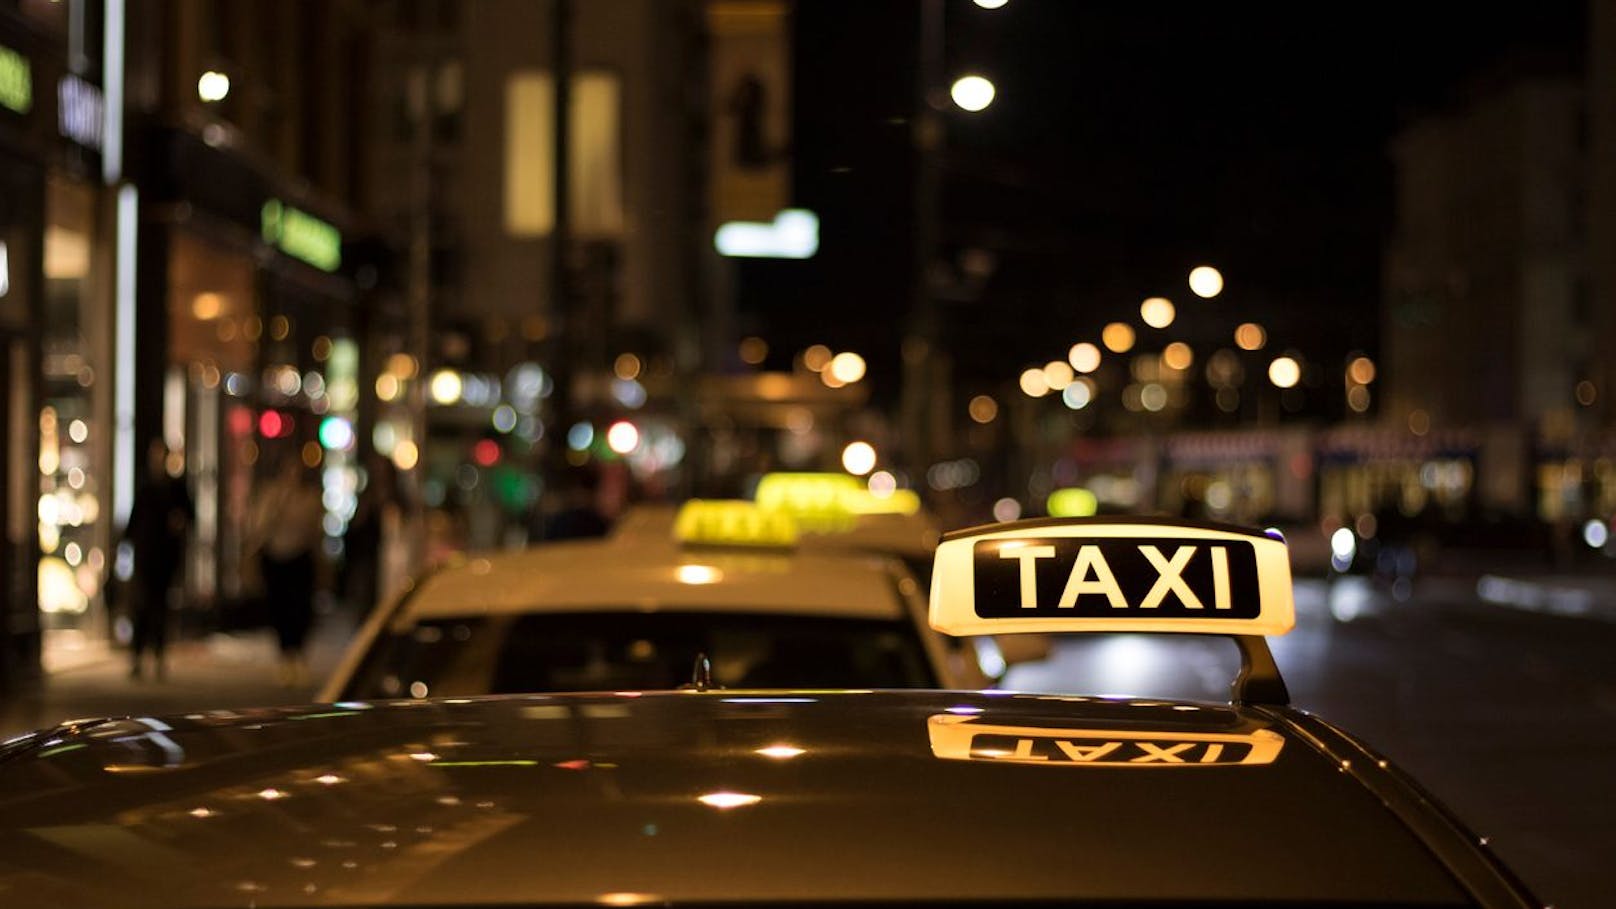 "Taxifahrer wollte eine sexuelle Gegenleistung"